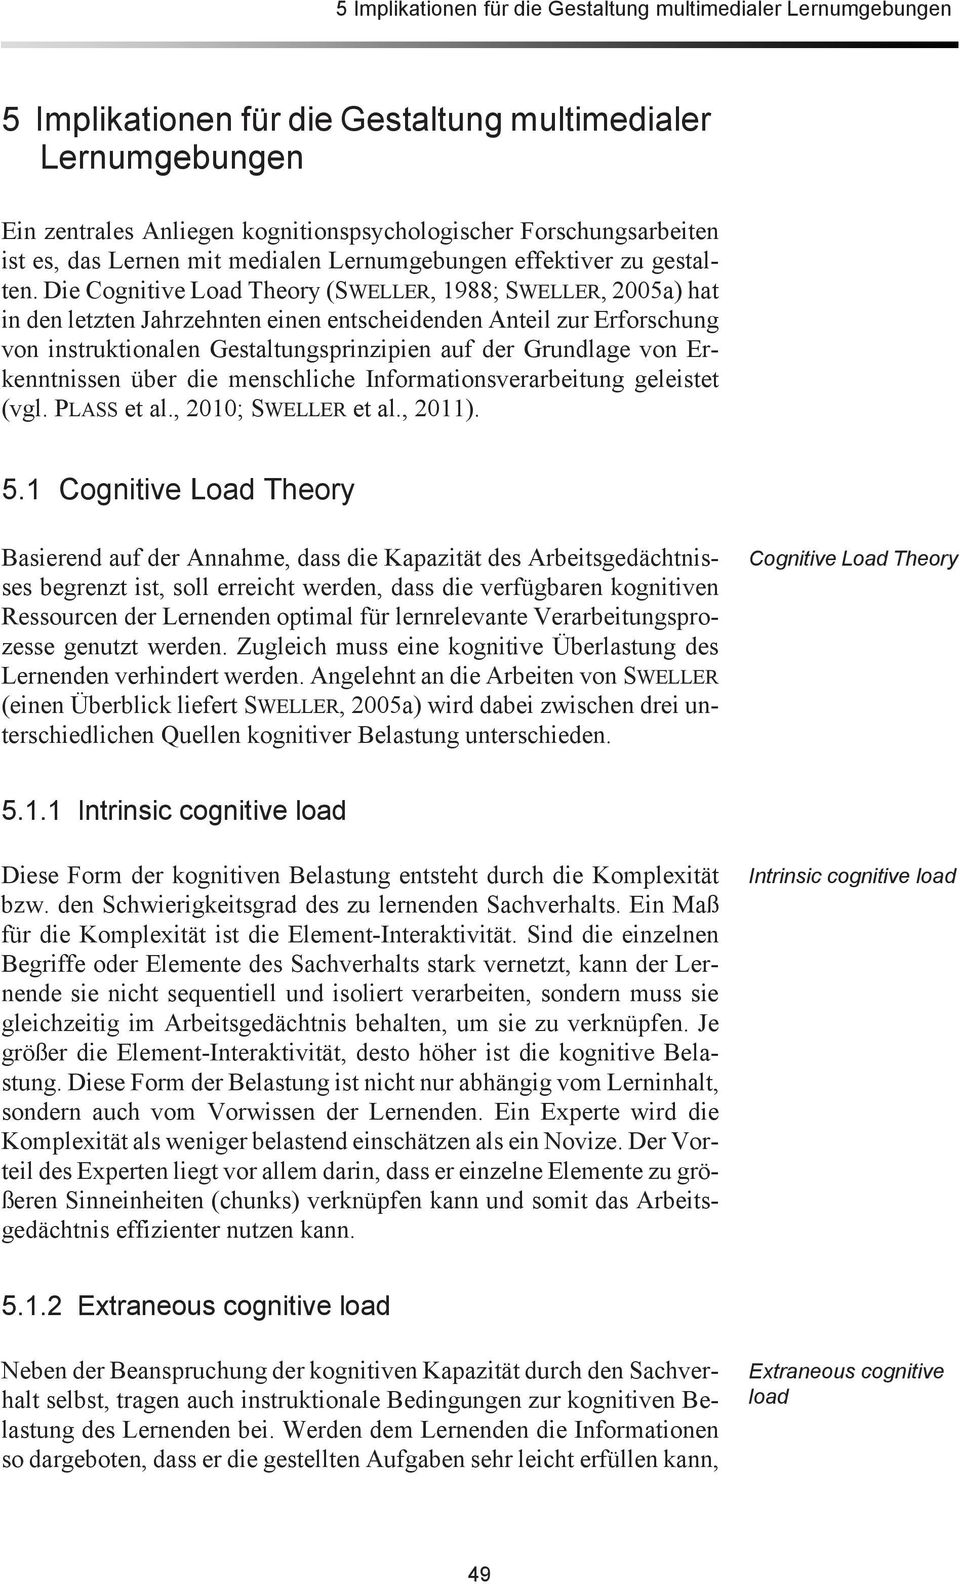 Die Cognitive Load Theory (SWELLER, 1988; SWELLER, 2005a) hat in den letzten Jahrzehnten einen entscheidenden Anteil zur Erforschung von instruktionalen Gestaltungsprinzipien auf der Grundlage von